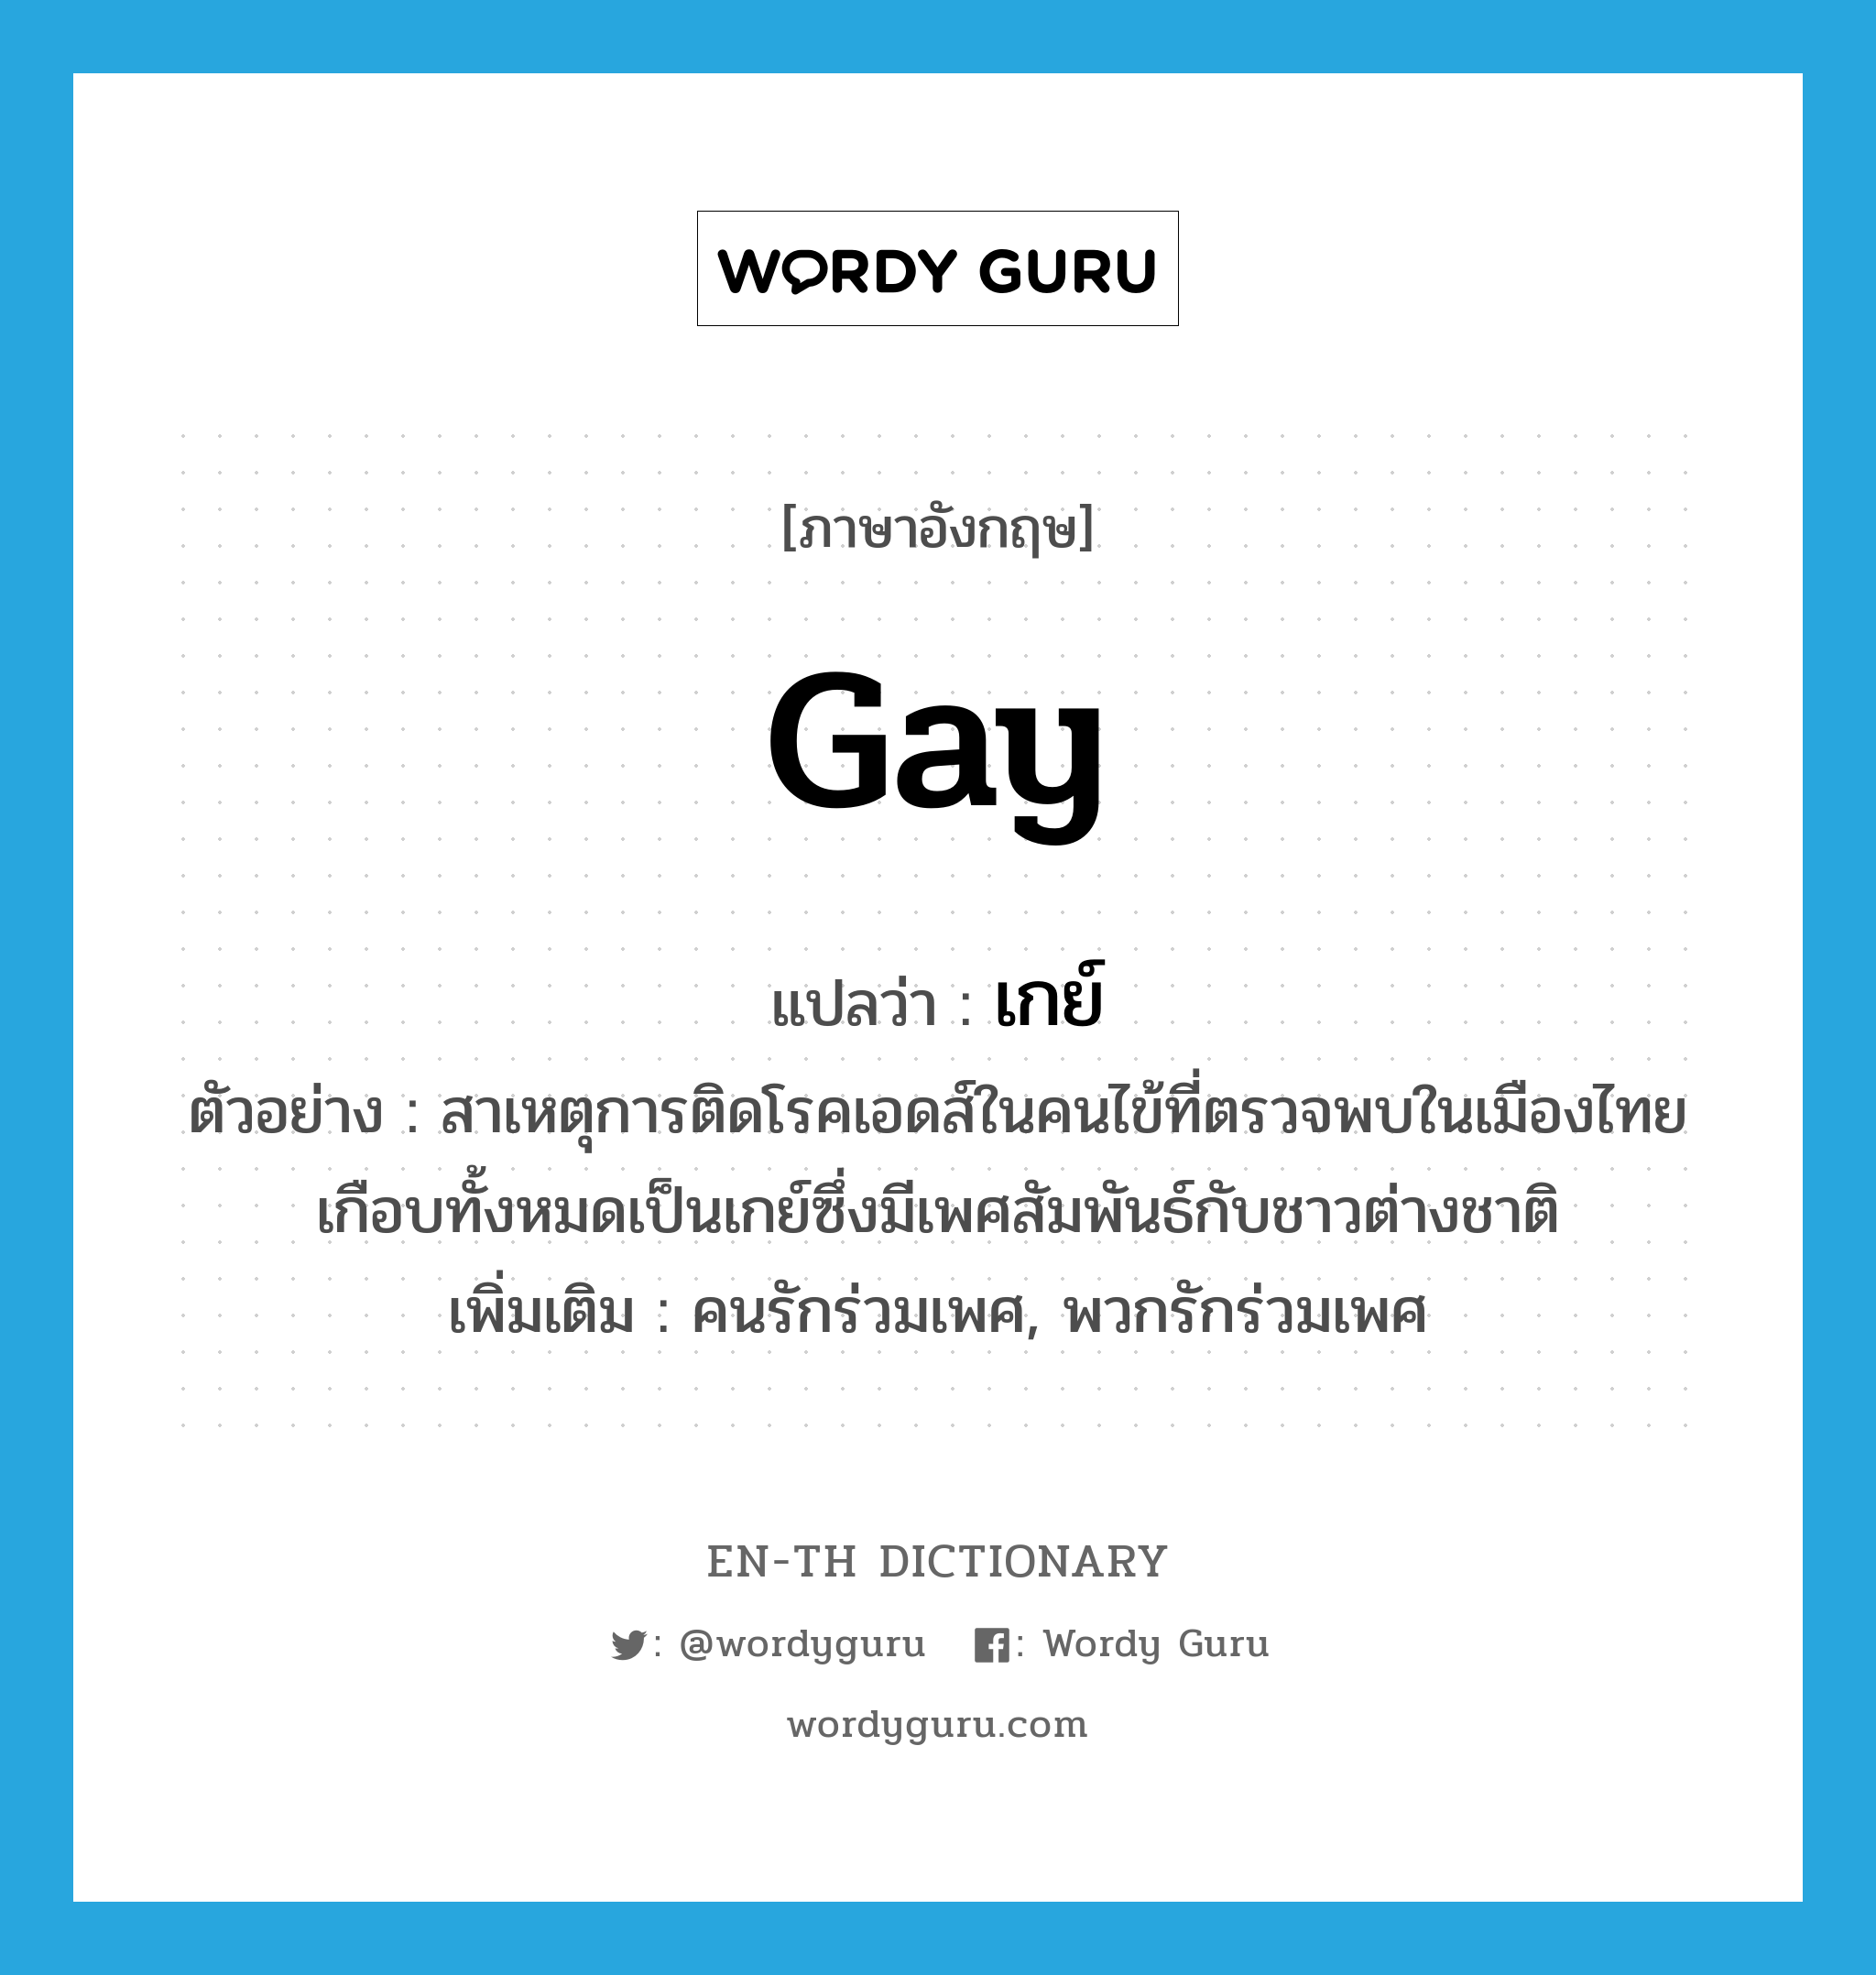 เกย์ ภาษาอังกฤษ?, คำศัพท์ภาษาอังกฤษ เกย์ แปลว่า gay ประเภท N ตัวอย่าง สาเหตุการติดโรคเอดส์ในคนไข้ที่ตรวจพบในเมืองไทย เกือบทั้งหมดเป็นเกย์ซึ่งมีเพศสัมพันธ์กับชาวต่างชาติ เพิ่มเติม คนรักร่วมเพศ, พวกรักร่วมเพศ หมวด N